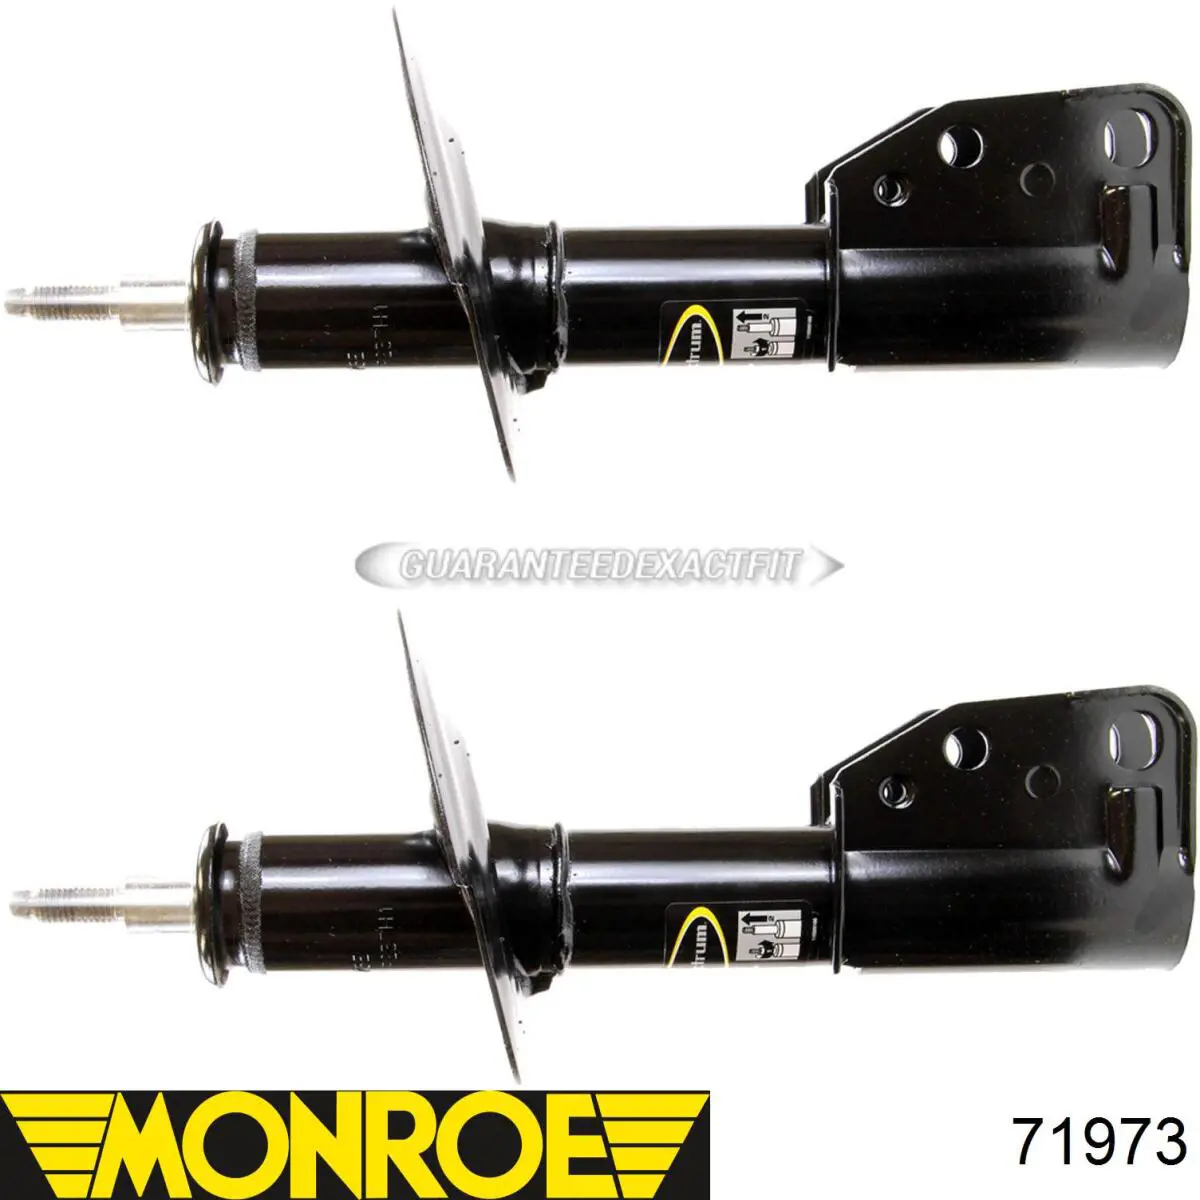 801973 Monroe амортизатор передний